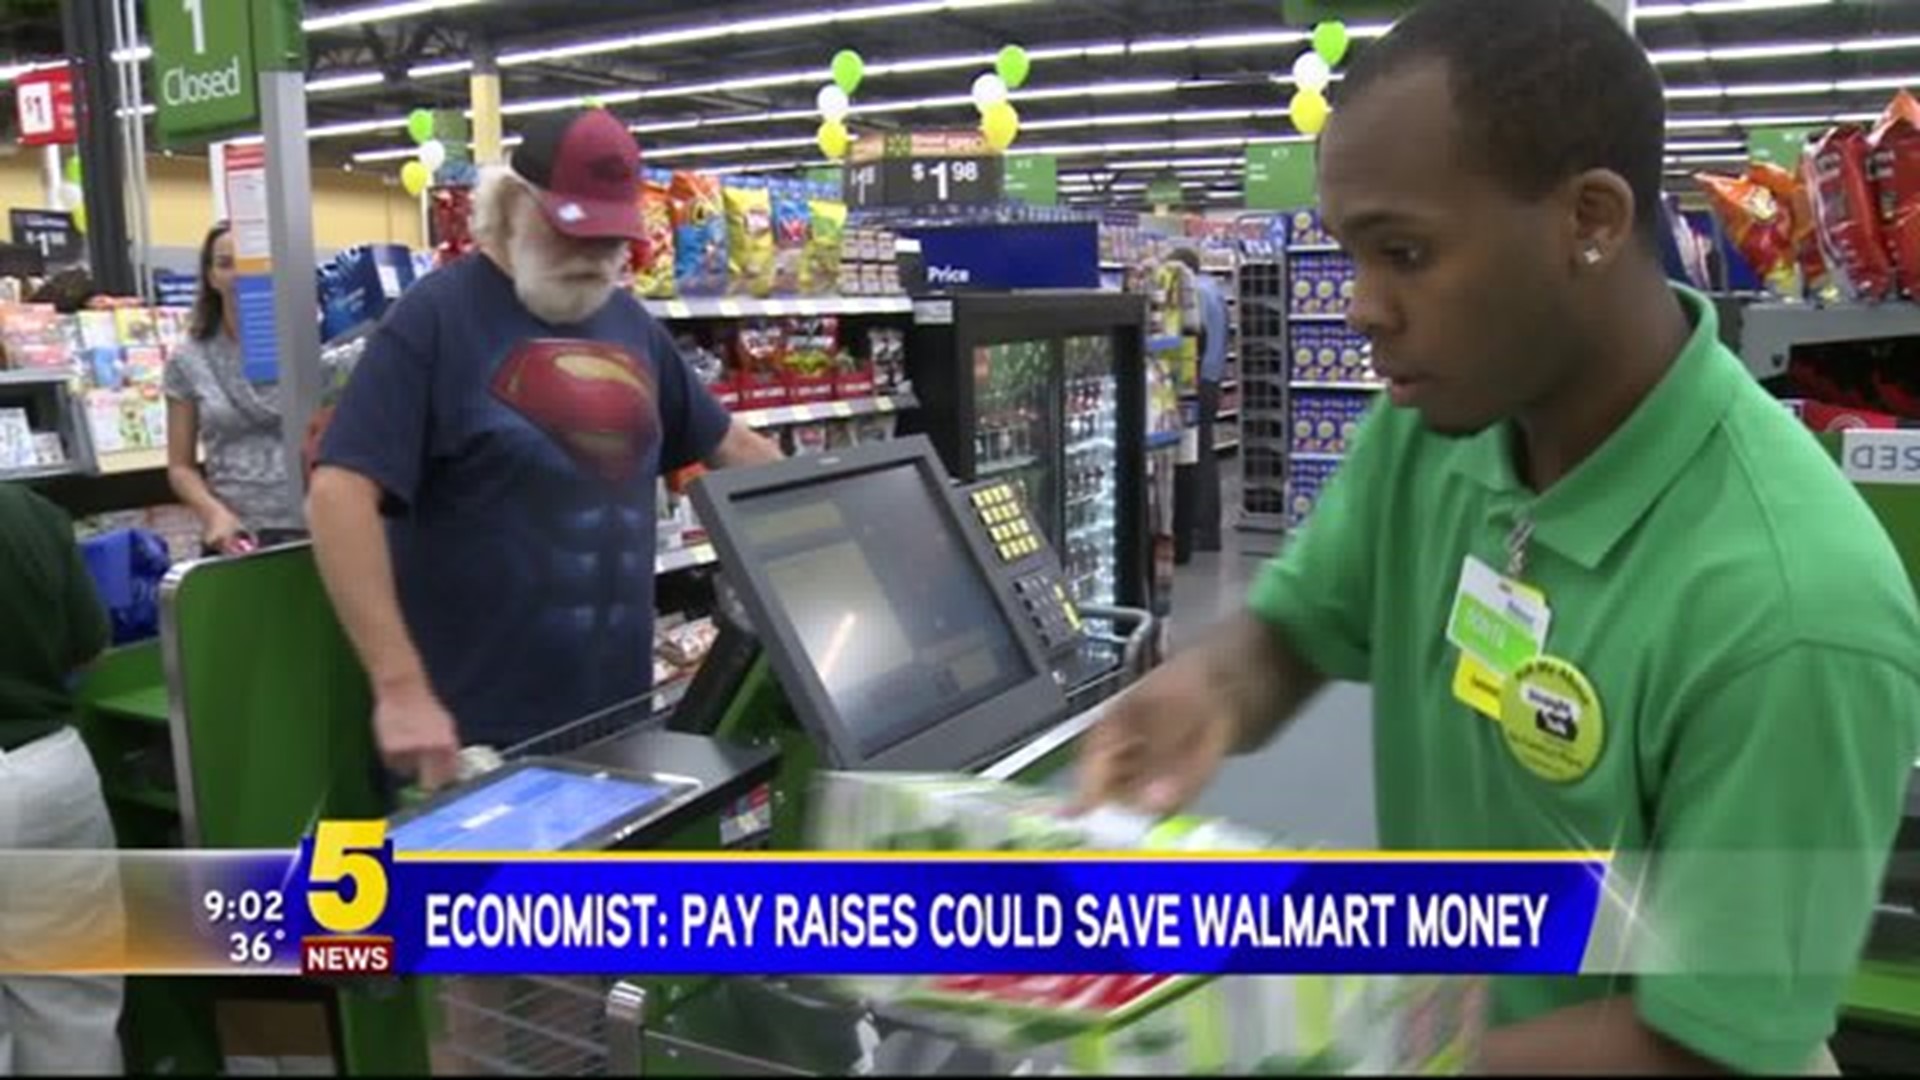 Walmart Raises Could Save Money